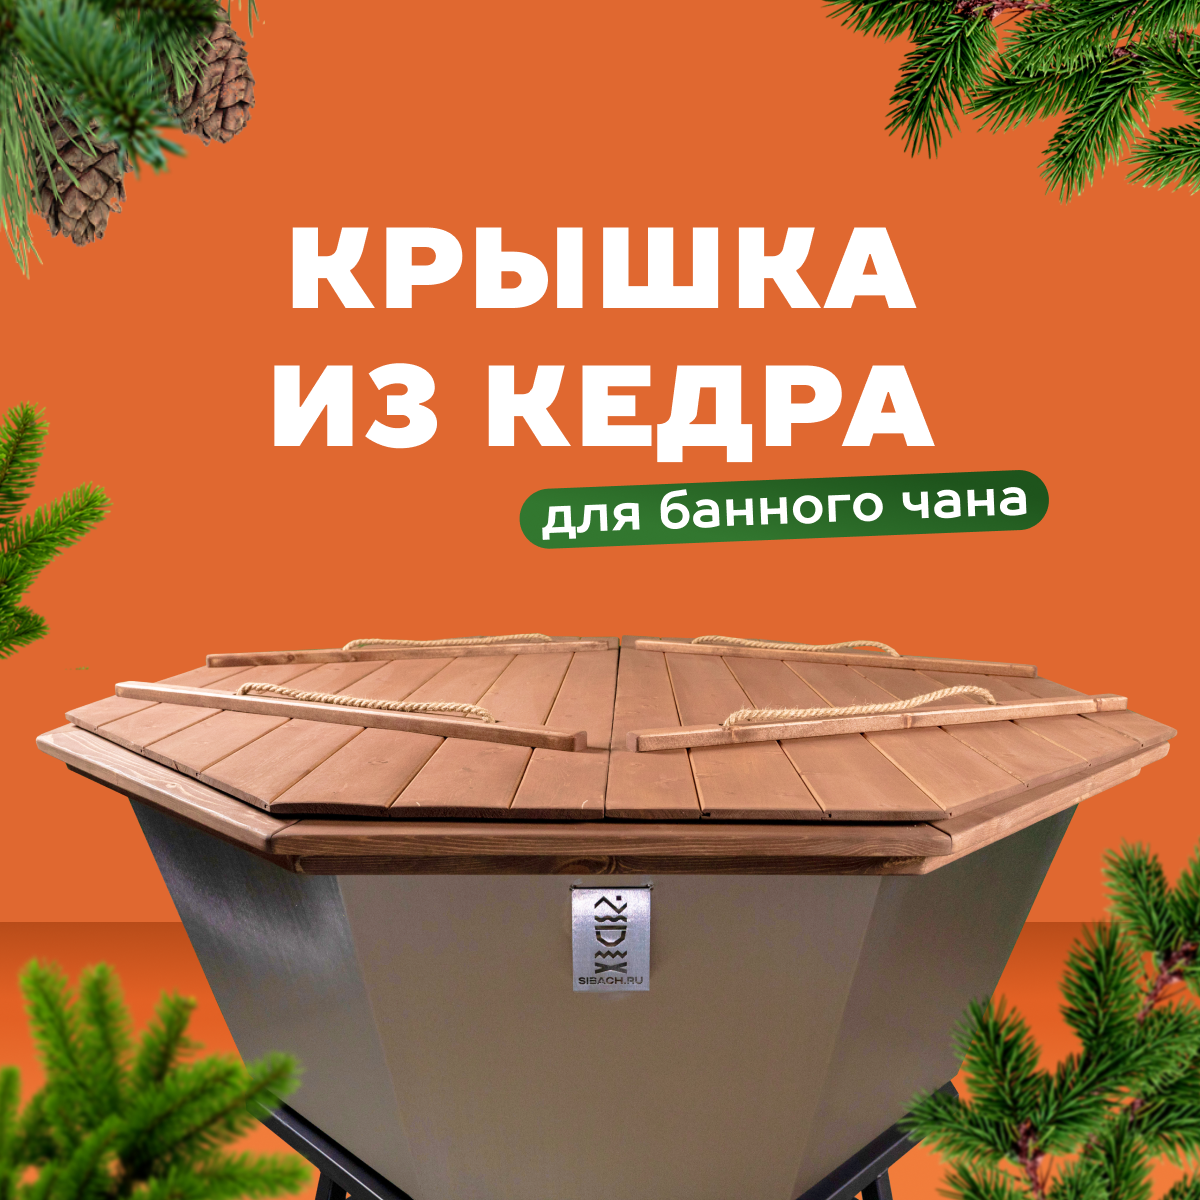 Крышка из Алтайского кедра для банного чана 6 человек №2. Сибирский Банный Чан. 185 см